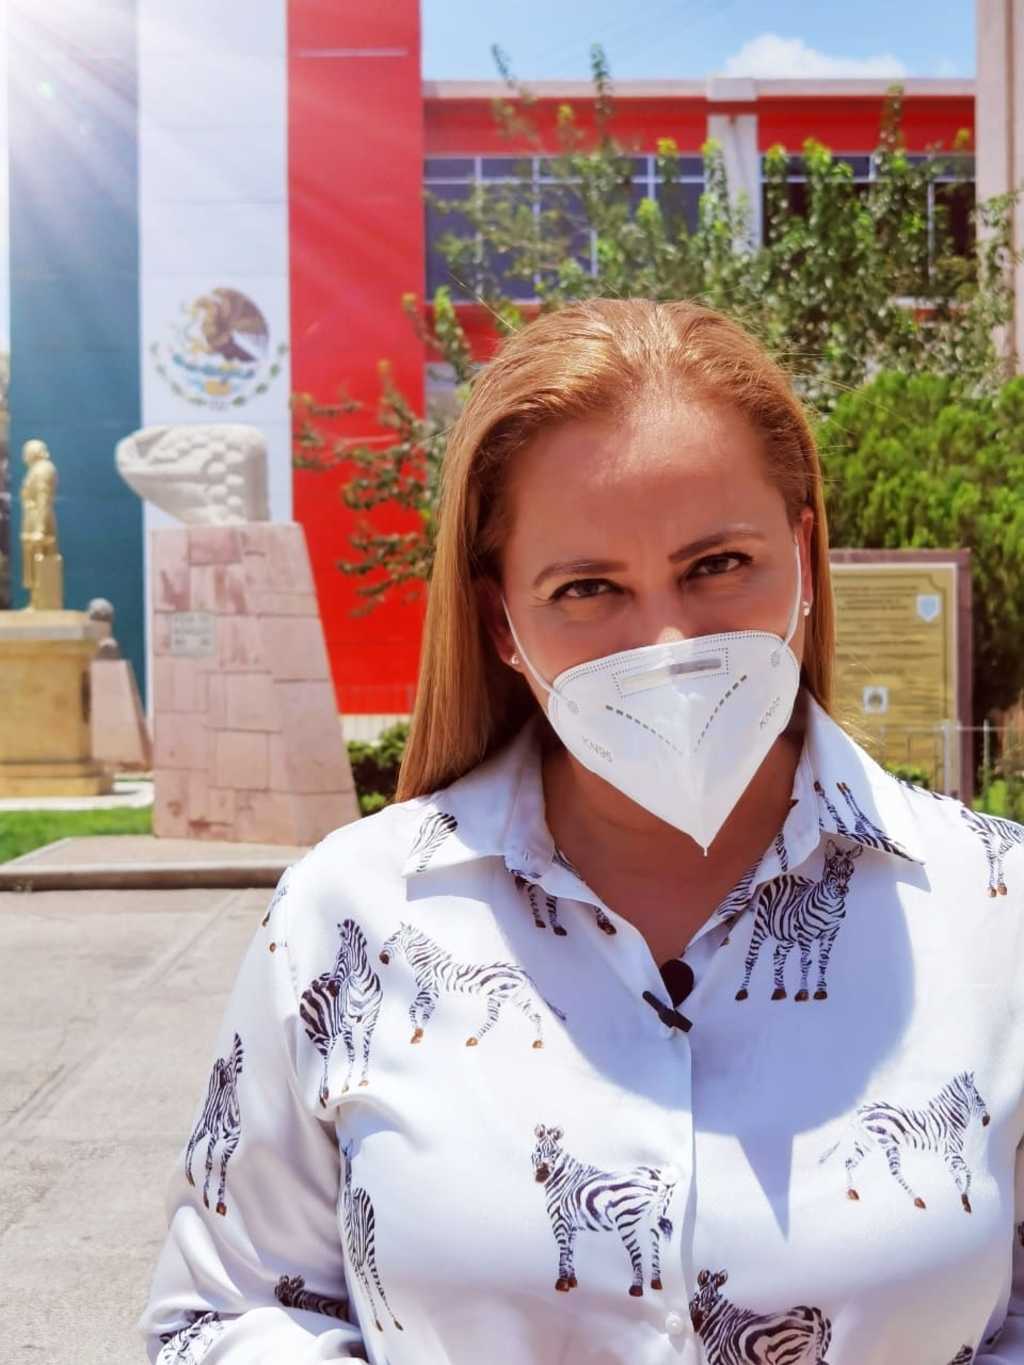 La alcaldesa de Gómez Palacio, Marina Vitela, aclaró que aprovechará las plataformas digitales para dar a conocer su mensaje.